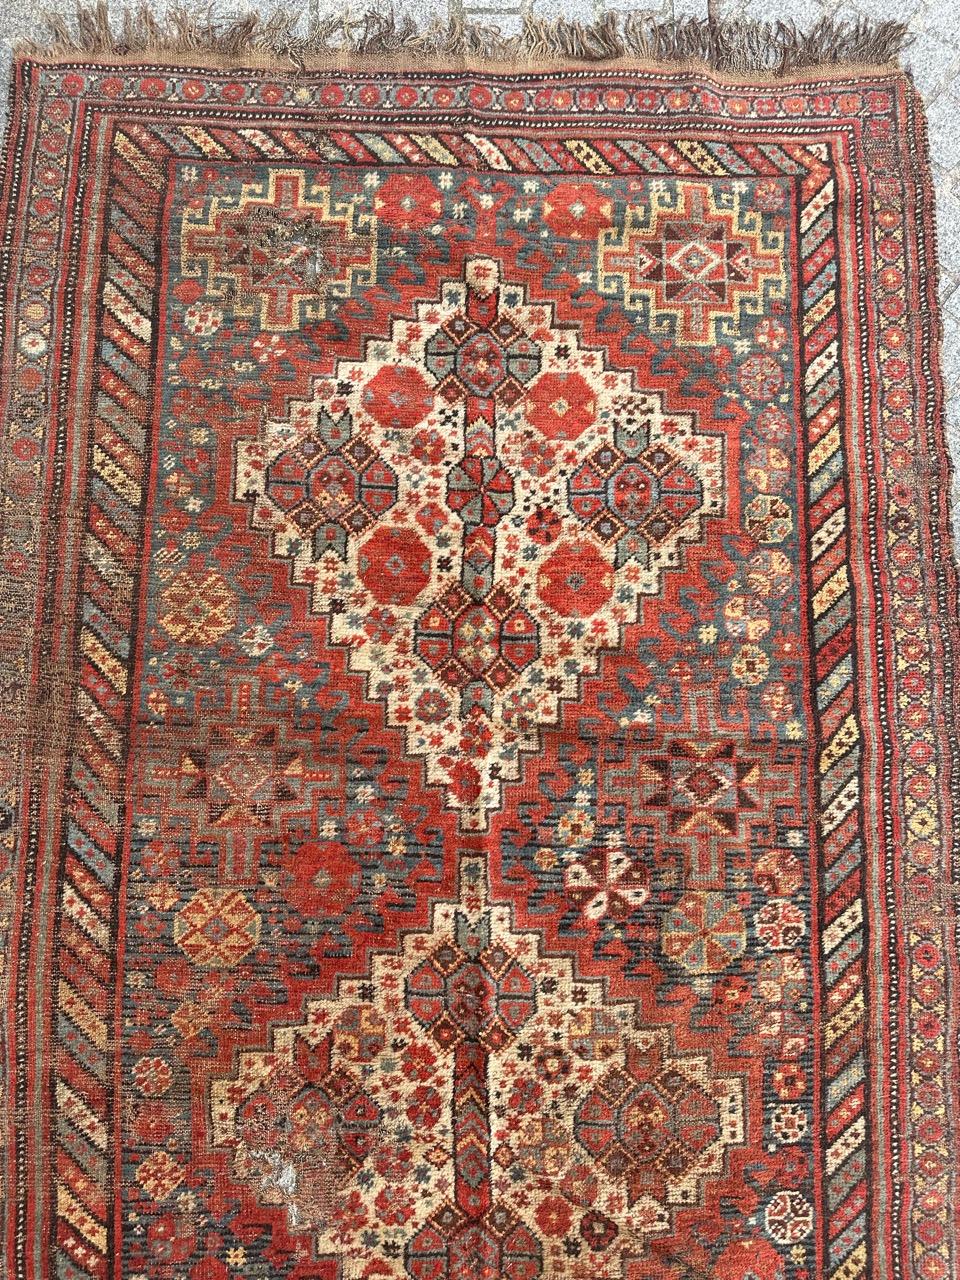 Magnifique tapis Shiraz de la fin du 19e siècle, à l'aspect délabré, avec des motifs géométriques et tribaux stylisés, et de belles couleurs naturelles avec du rouge orangé, du bleu, du jaune, du blanc et du noir. Nombreuses usures, quelques